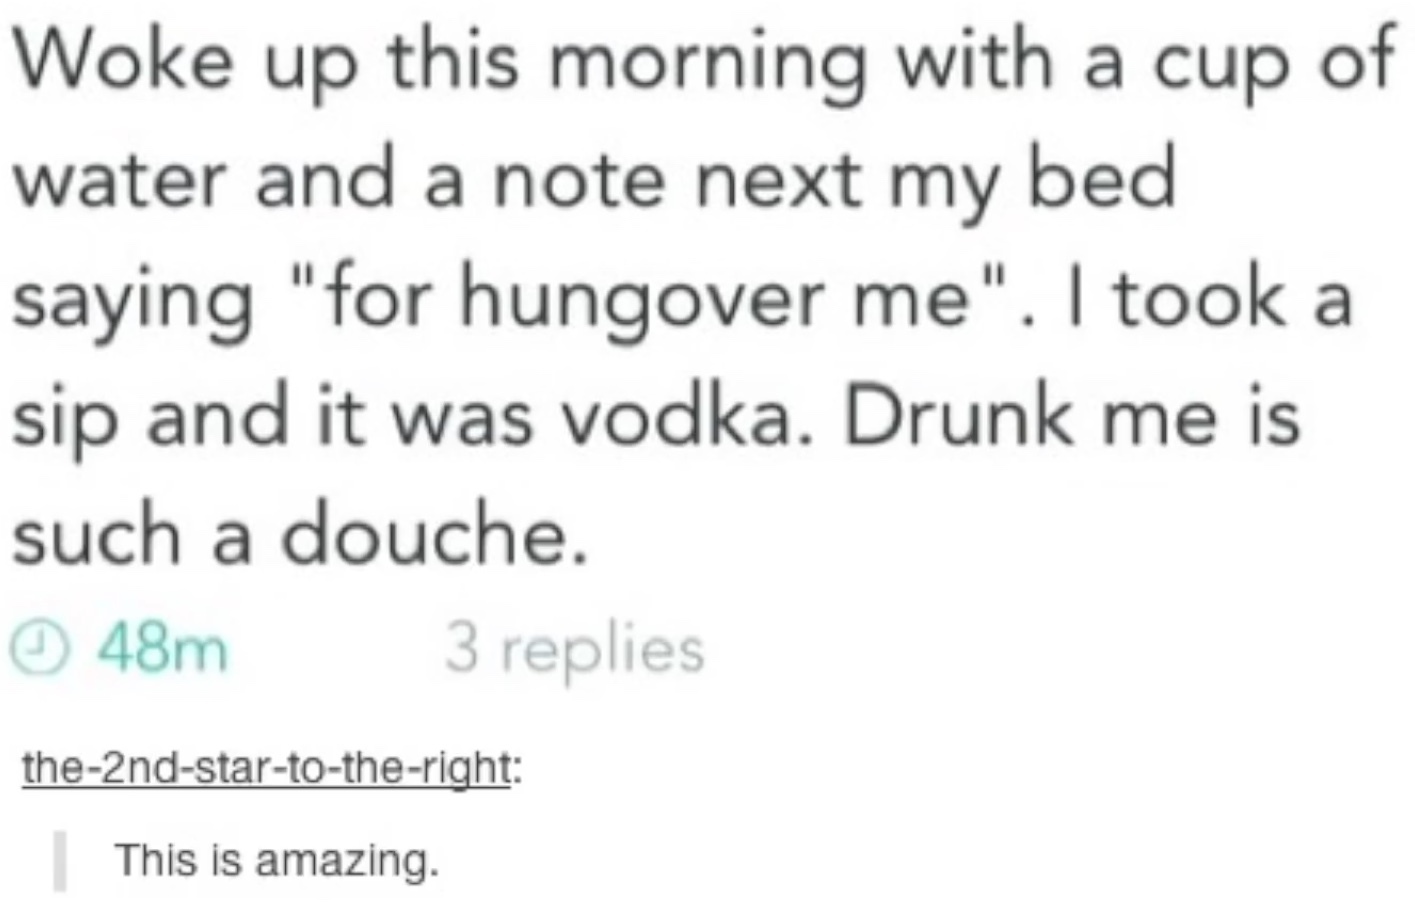 drunk me is a douche - meme